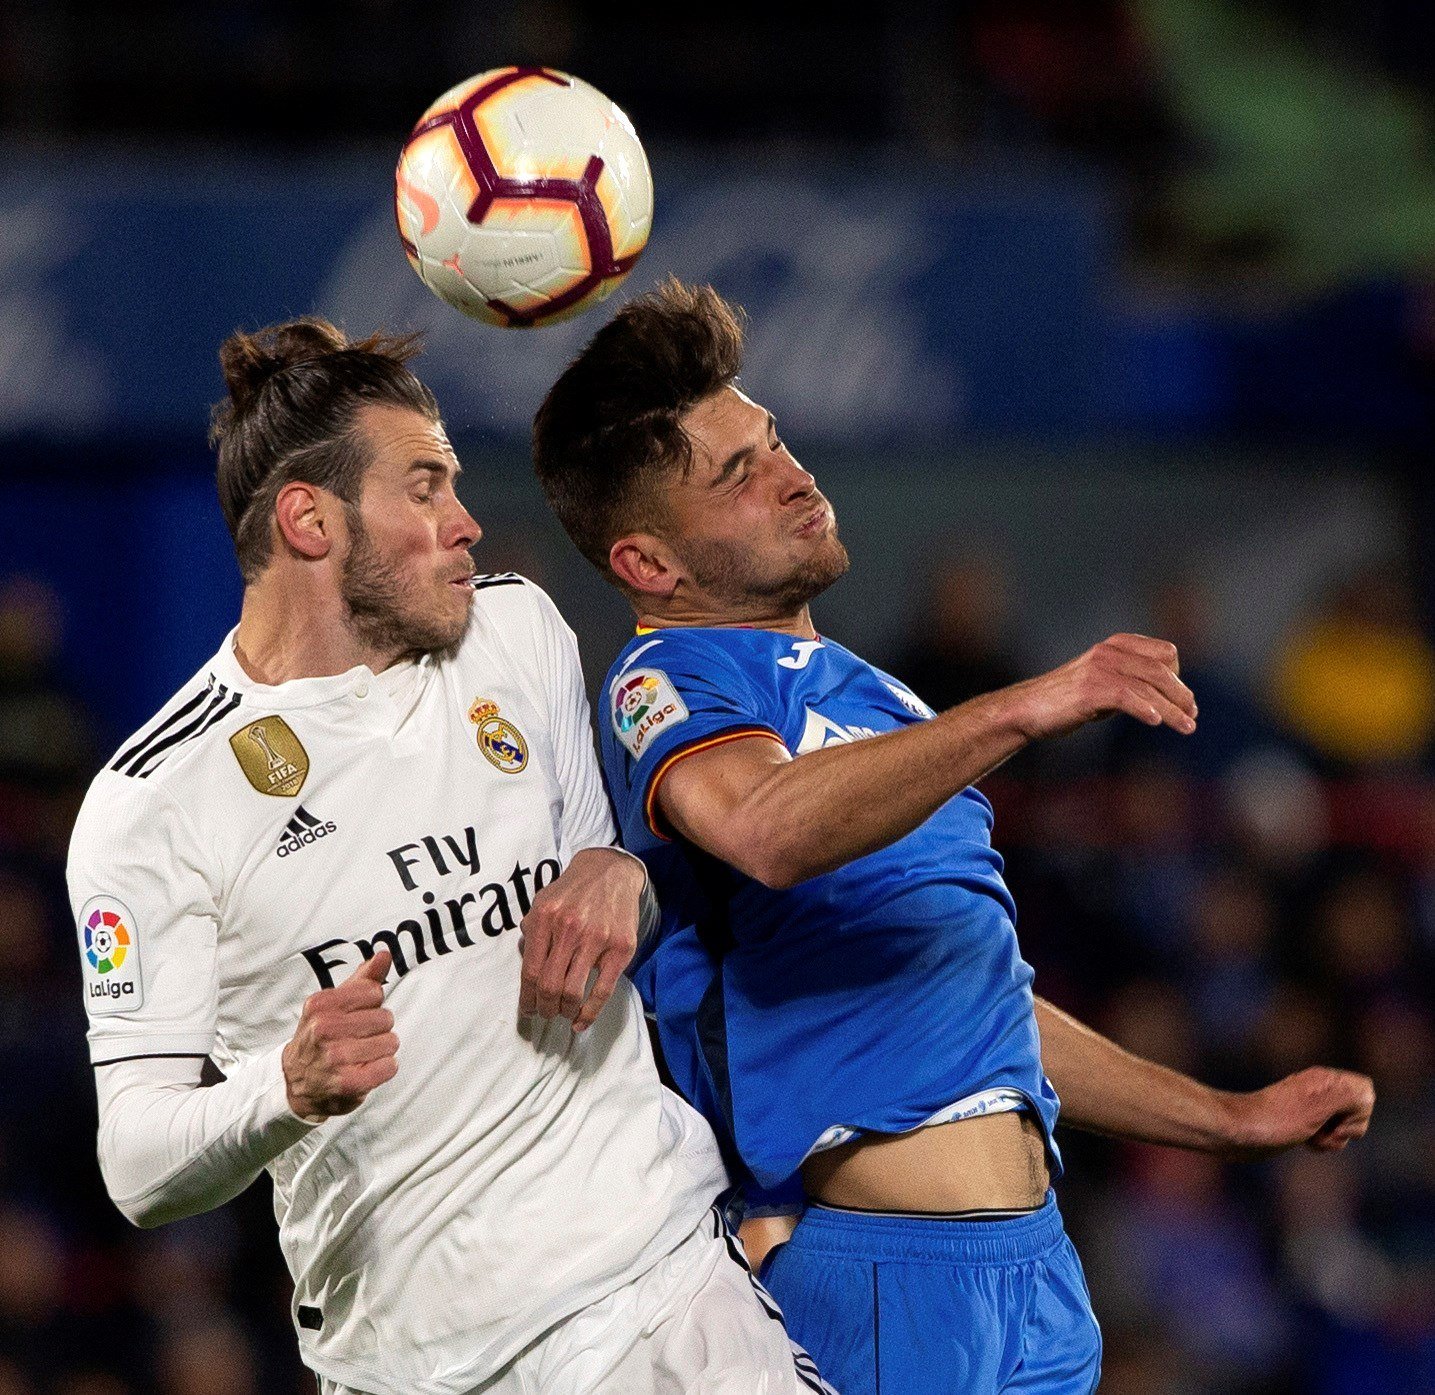 El Madrid empata en Getafe y liga la tercera posición (0-0)